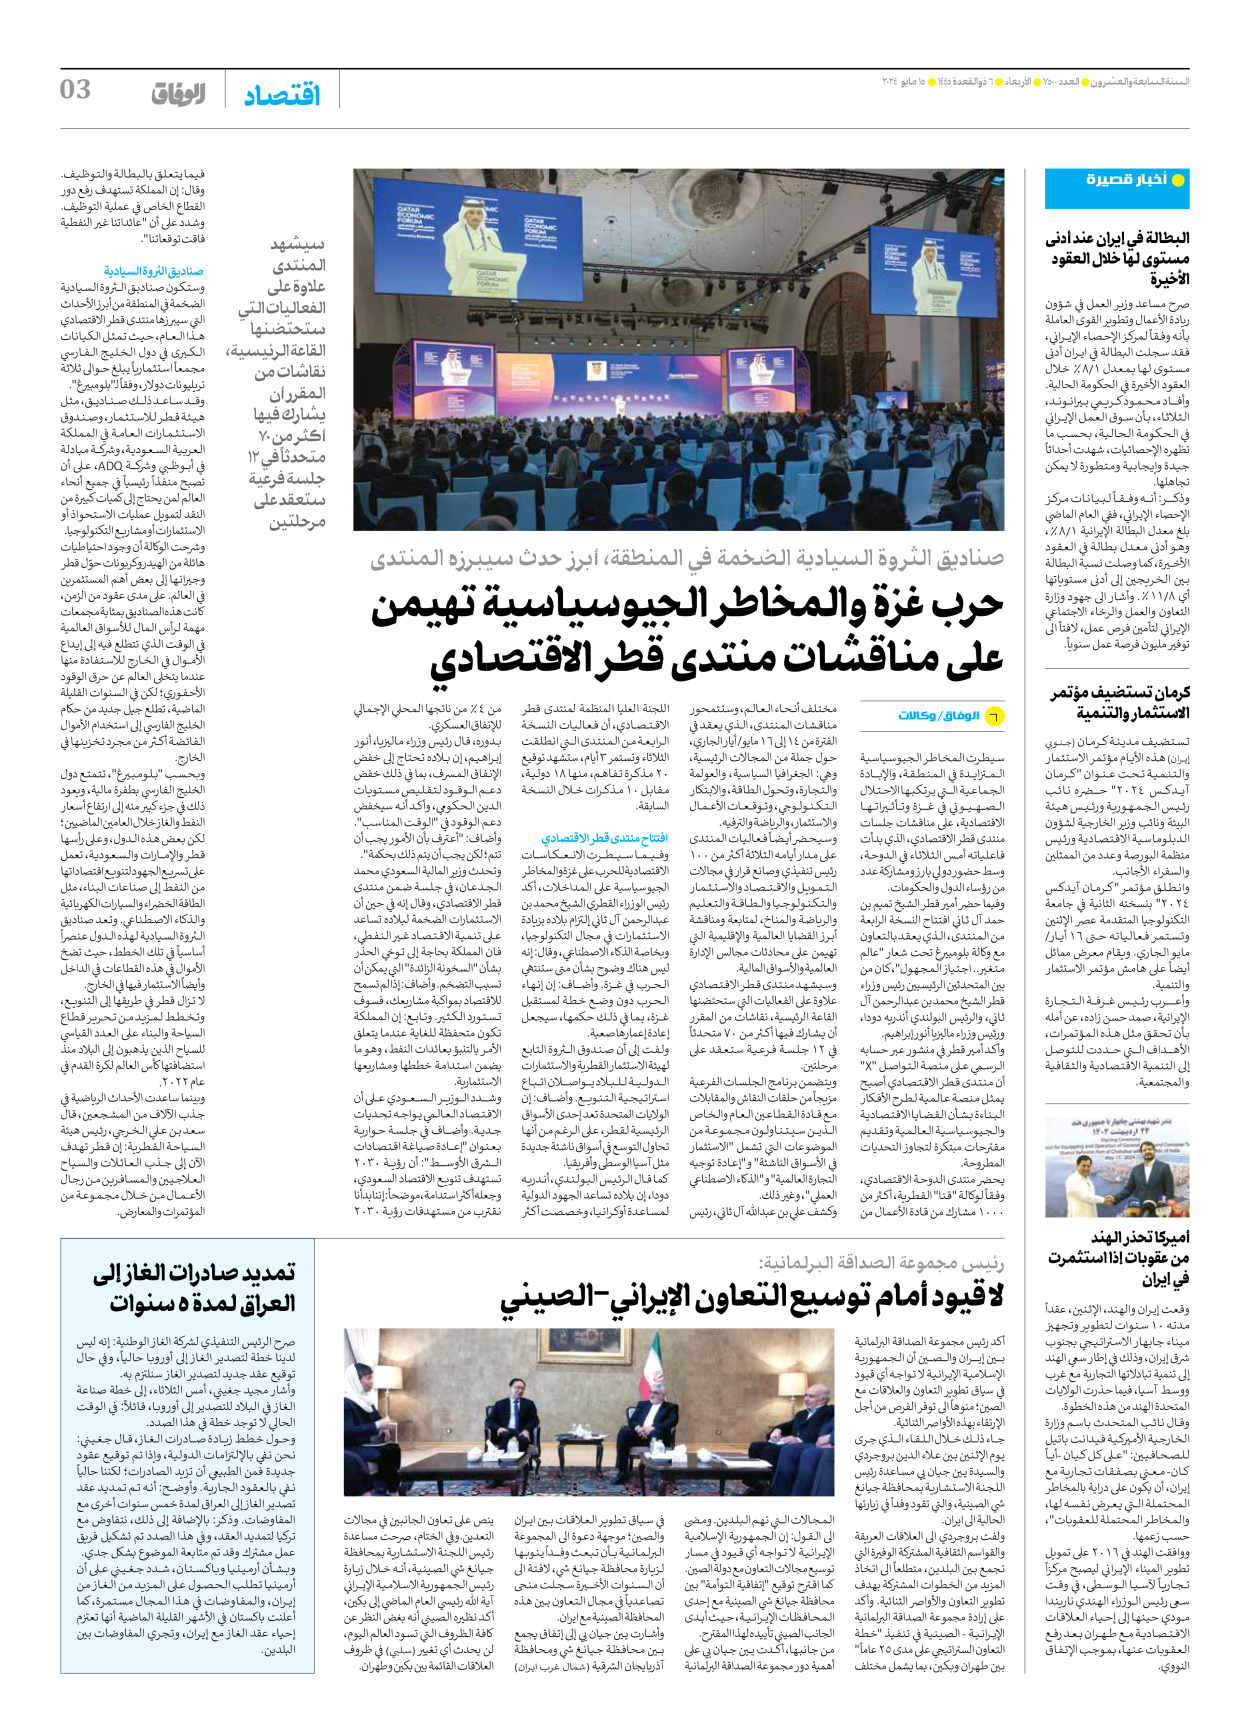 صحیفة ایران الدولیة الوفاق - العدد سبعة آلاف وخمسمائة - ١٥ مايو ٢٠٢٤ - الصفحة ۳